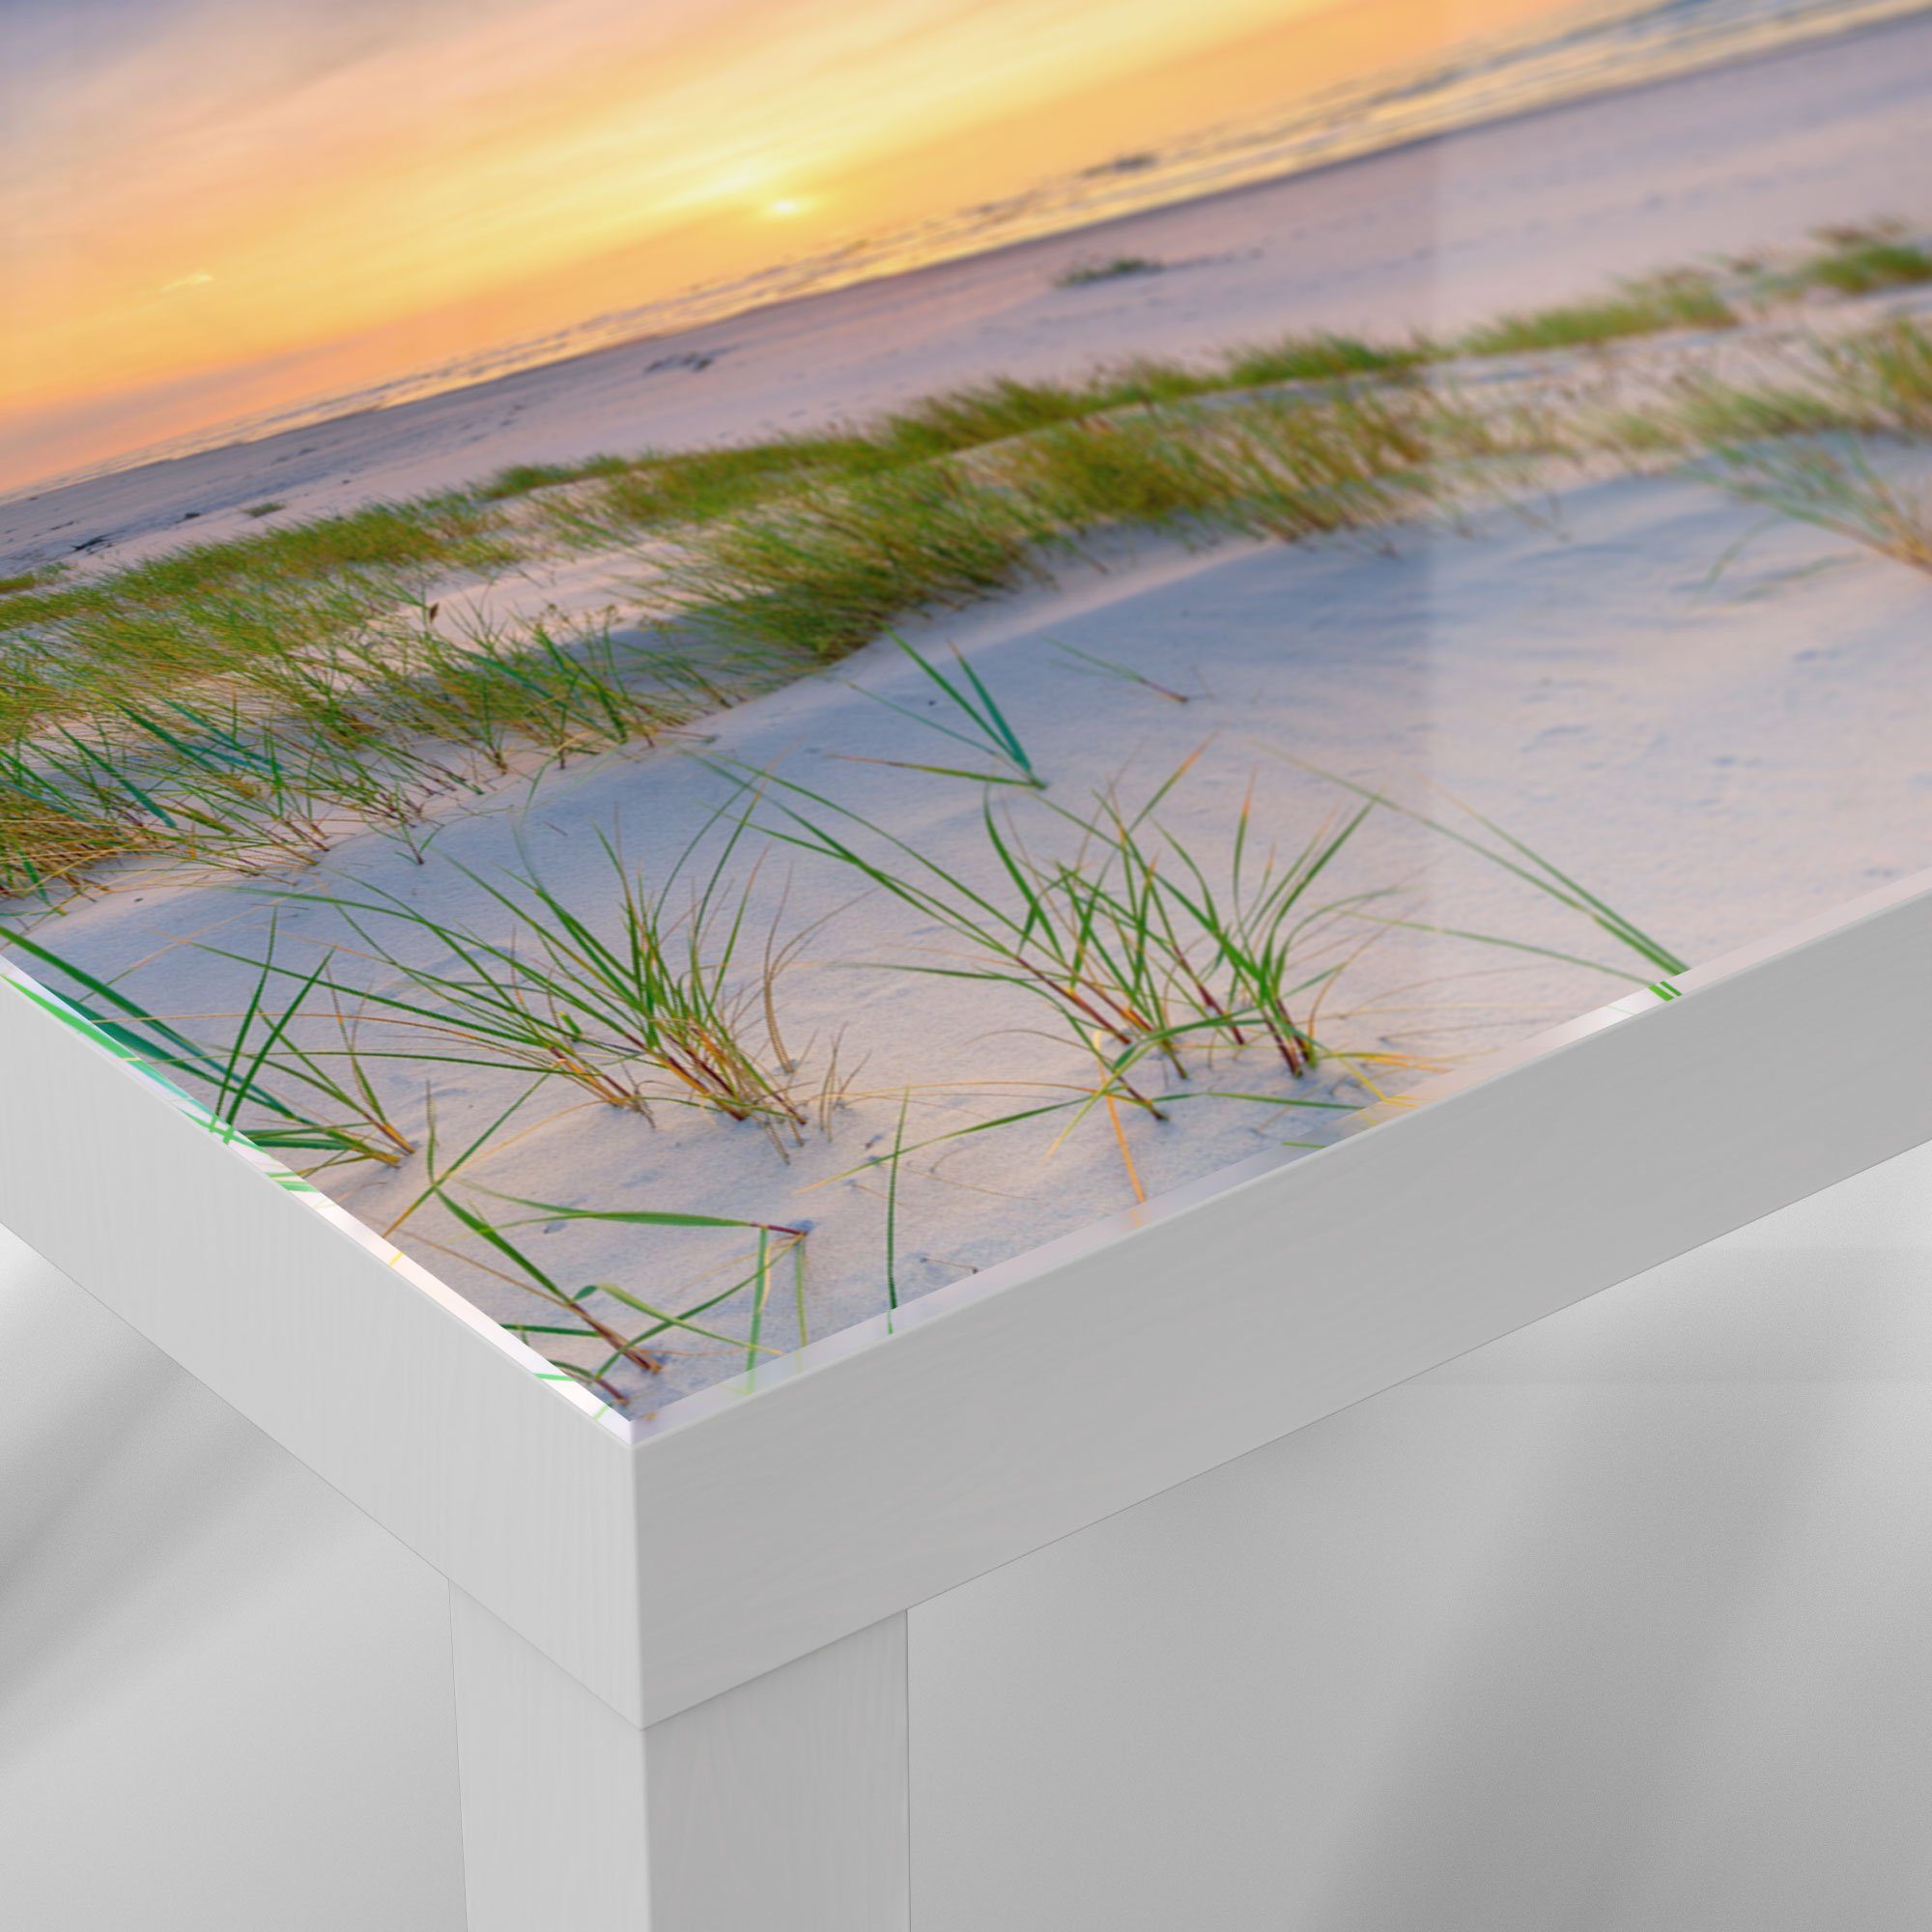 Glas Beistelltisch Weiß modern über Glastisch Ostsee', 'Sonne Couchtisch sinkt DEQORI